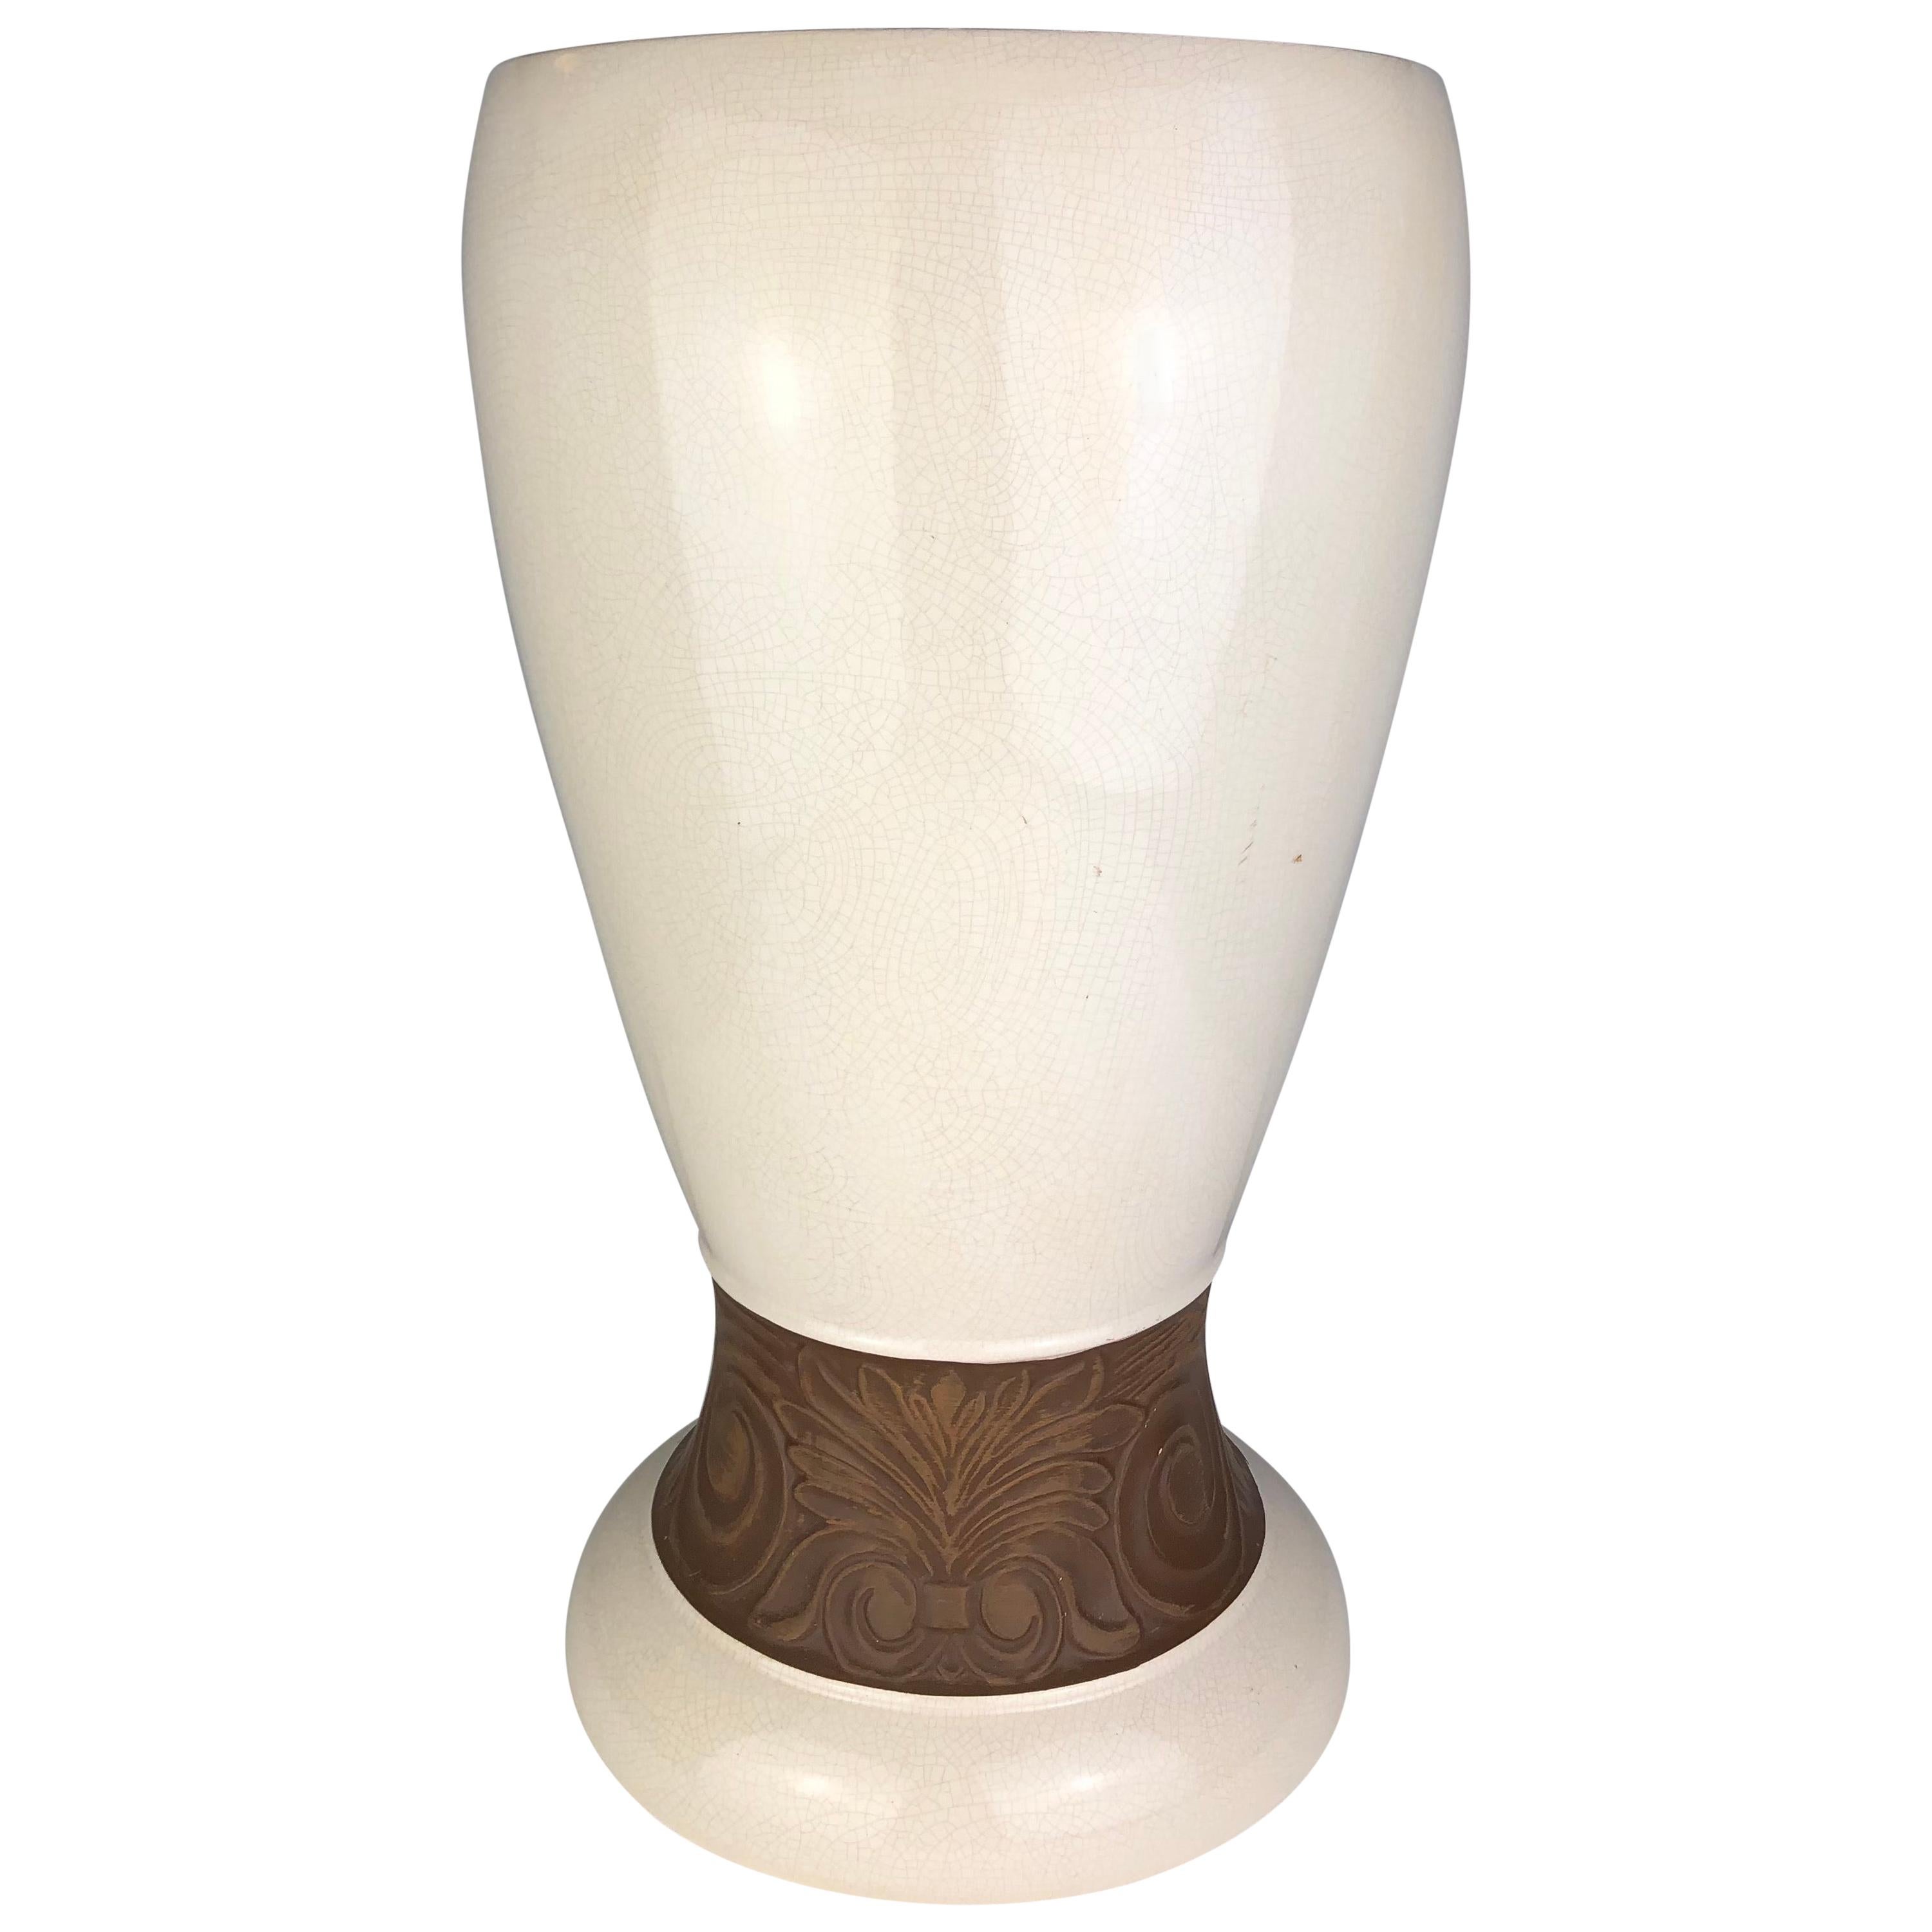 Wunderschöne Keramikvase im Art-déco-Stil von Saint Clement, Frankreich, mit weißer Craquelé-Glasur und Blumendekor in Bodennähe, um 1930. 

Die Craquelé-Klarglasur war eine beliebte Technik für Tier- und Figurenfiguren sowie für dekorative Vasen in